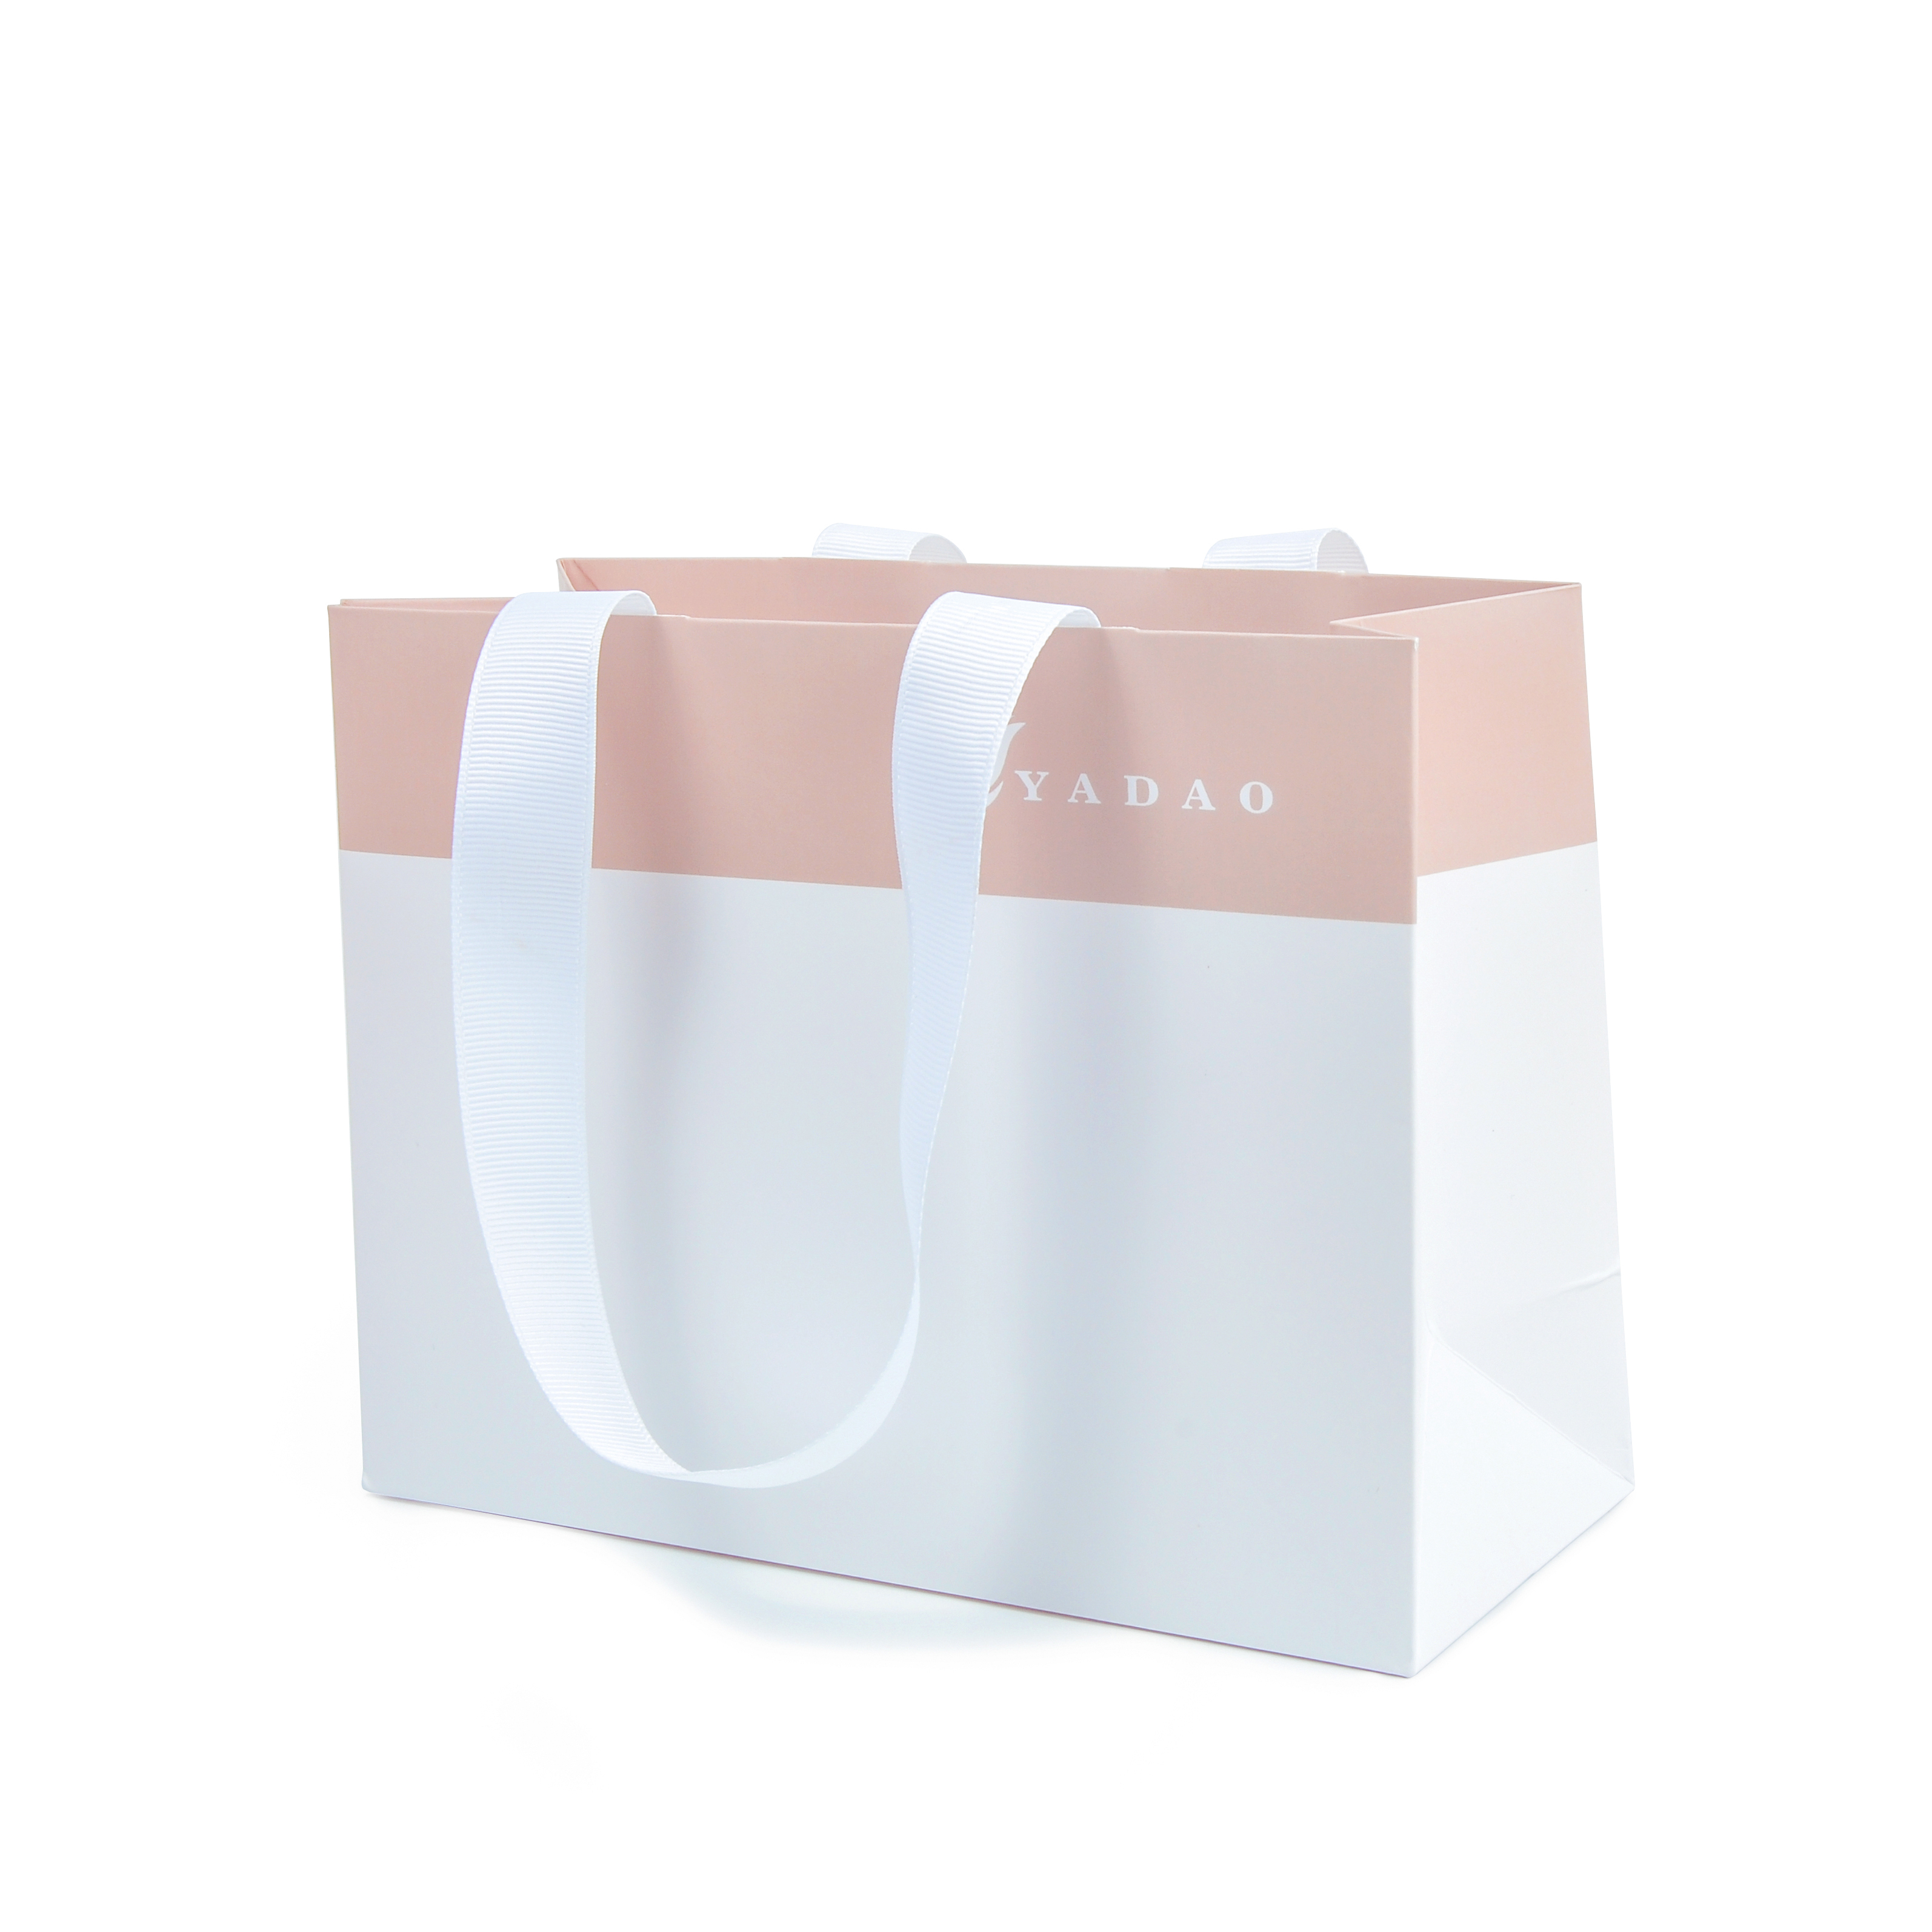 Τσάντα συσκευασίας χάρτινης συσκευασίας Custom Design για κοσμήματα και δώρο με εκτύπωση λογότυπου